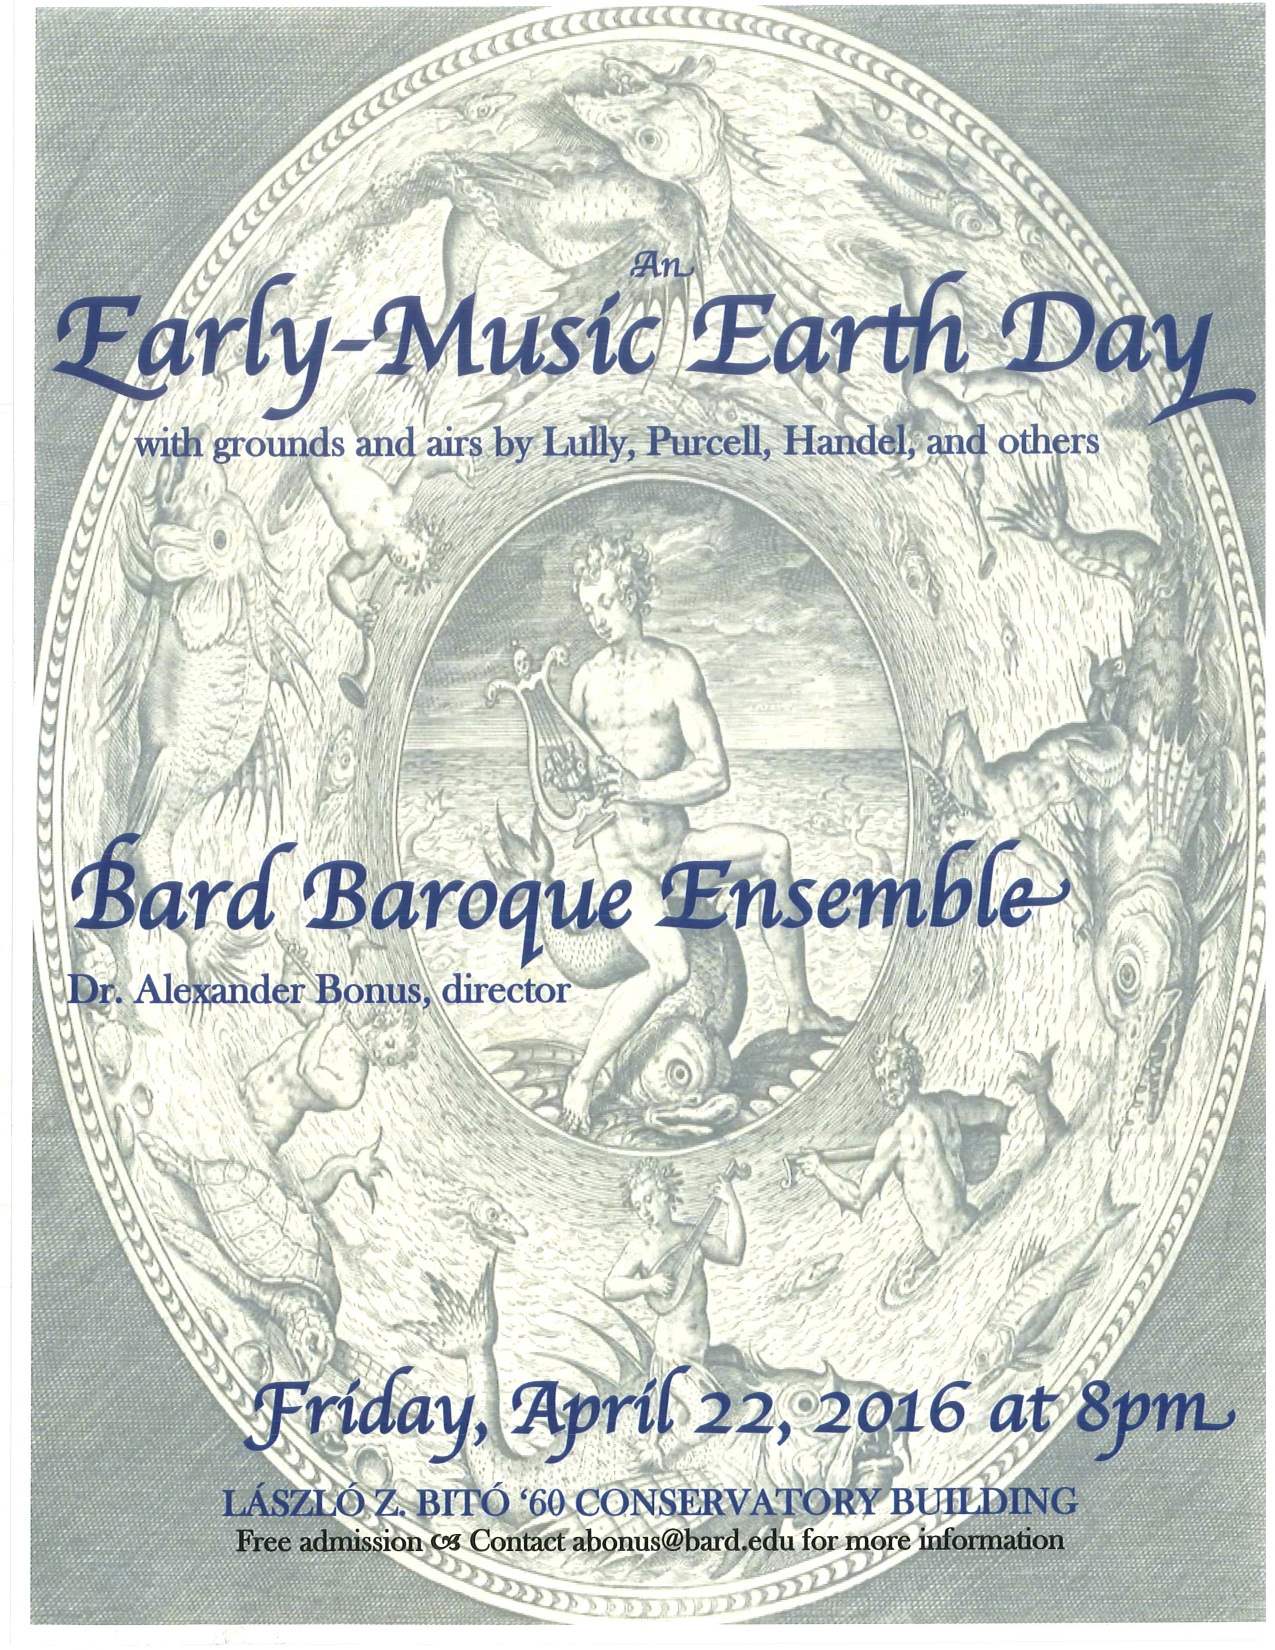 Bard Baroque Ensemble